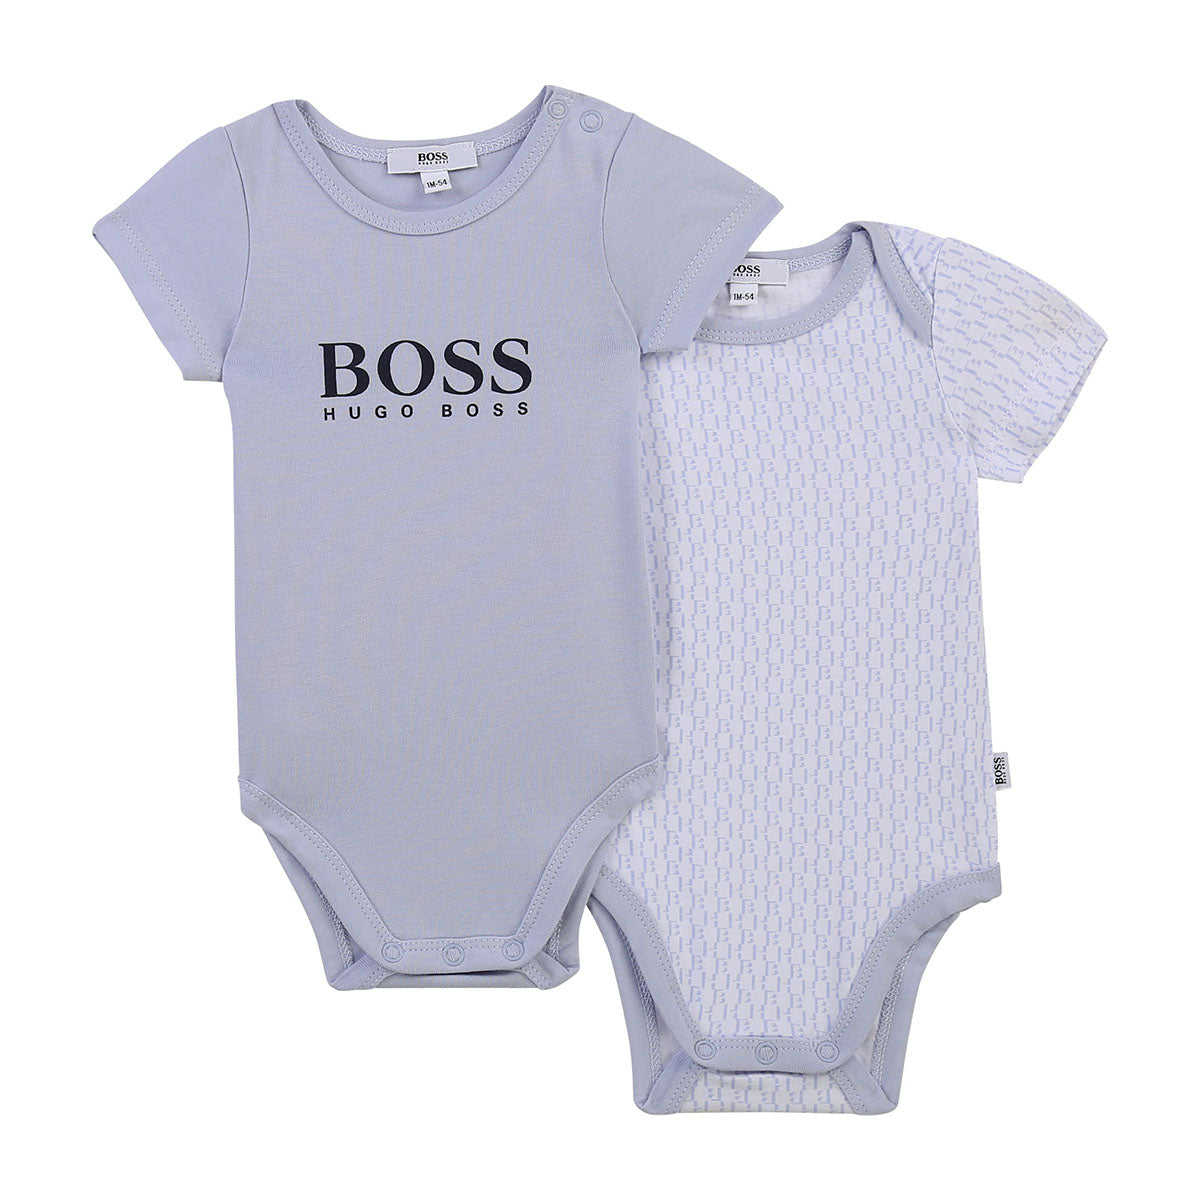 זוג בגדי גוף HUGO BOSS לתינוקות